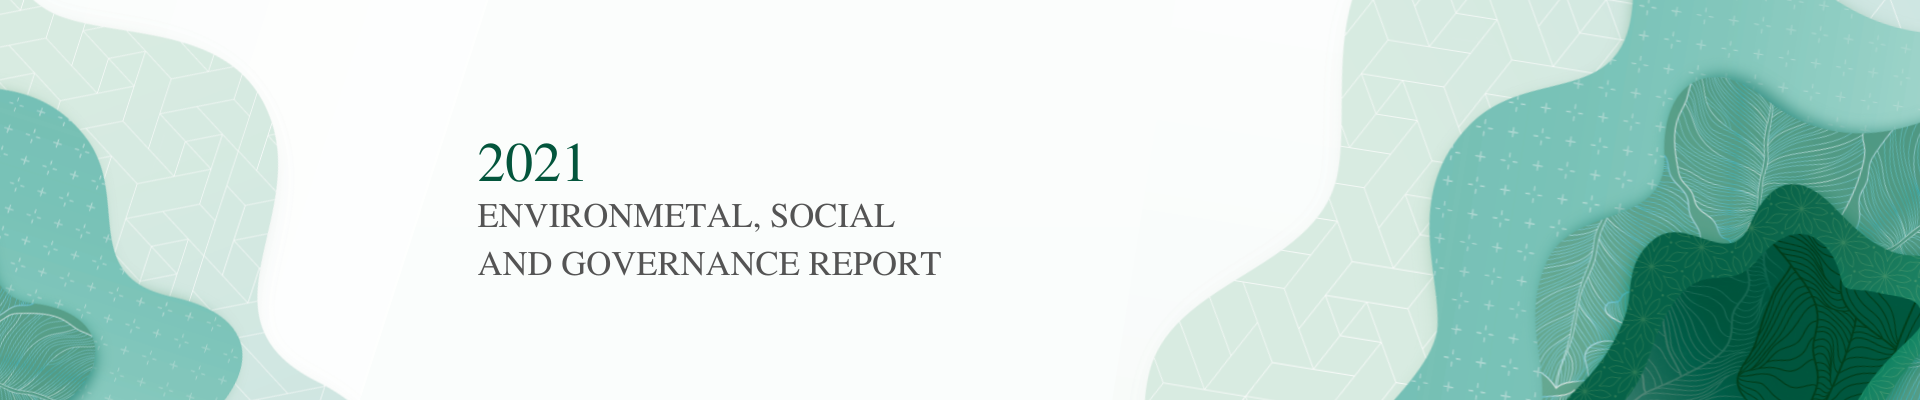 ESG-Report-2021-homepage-banner-en_1920x400